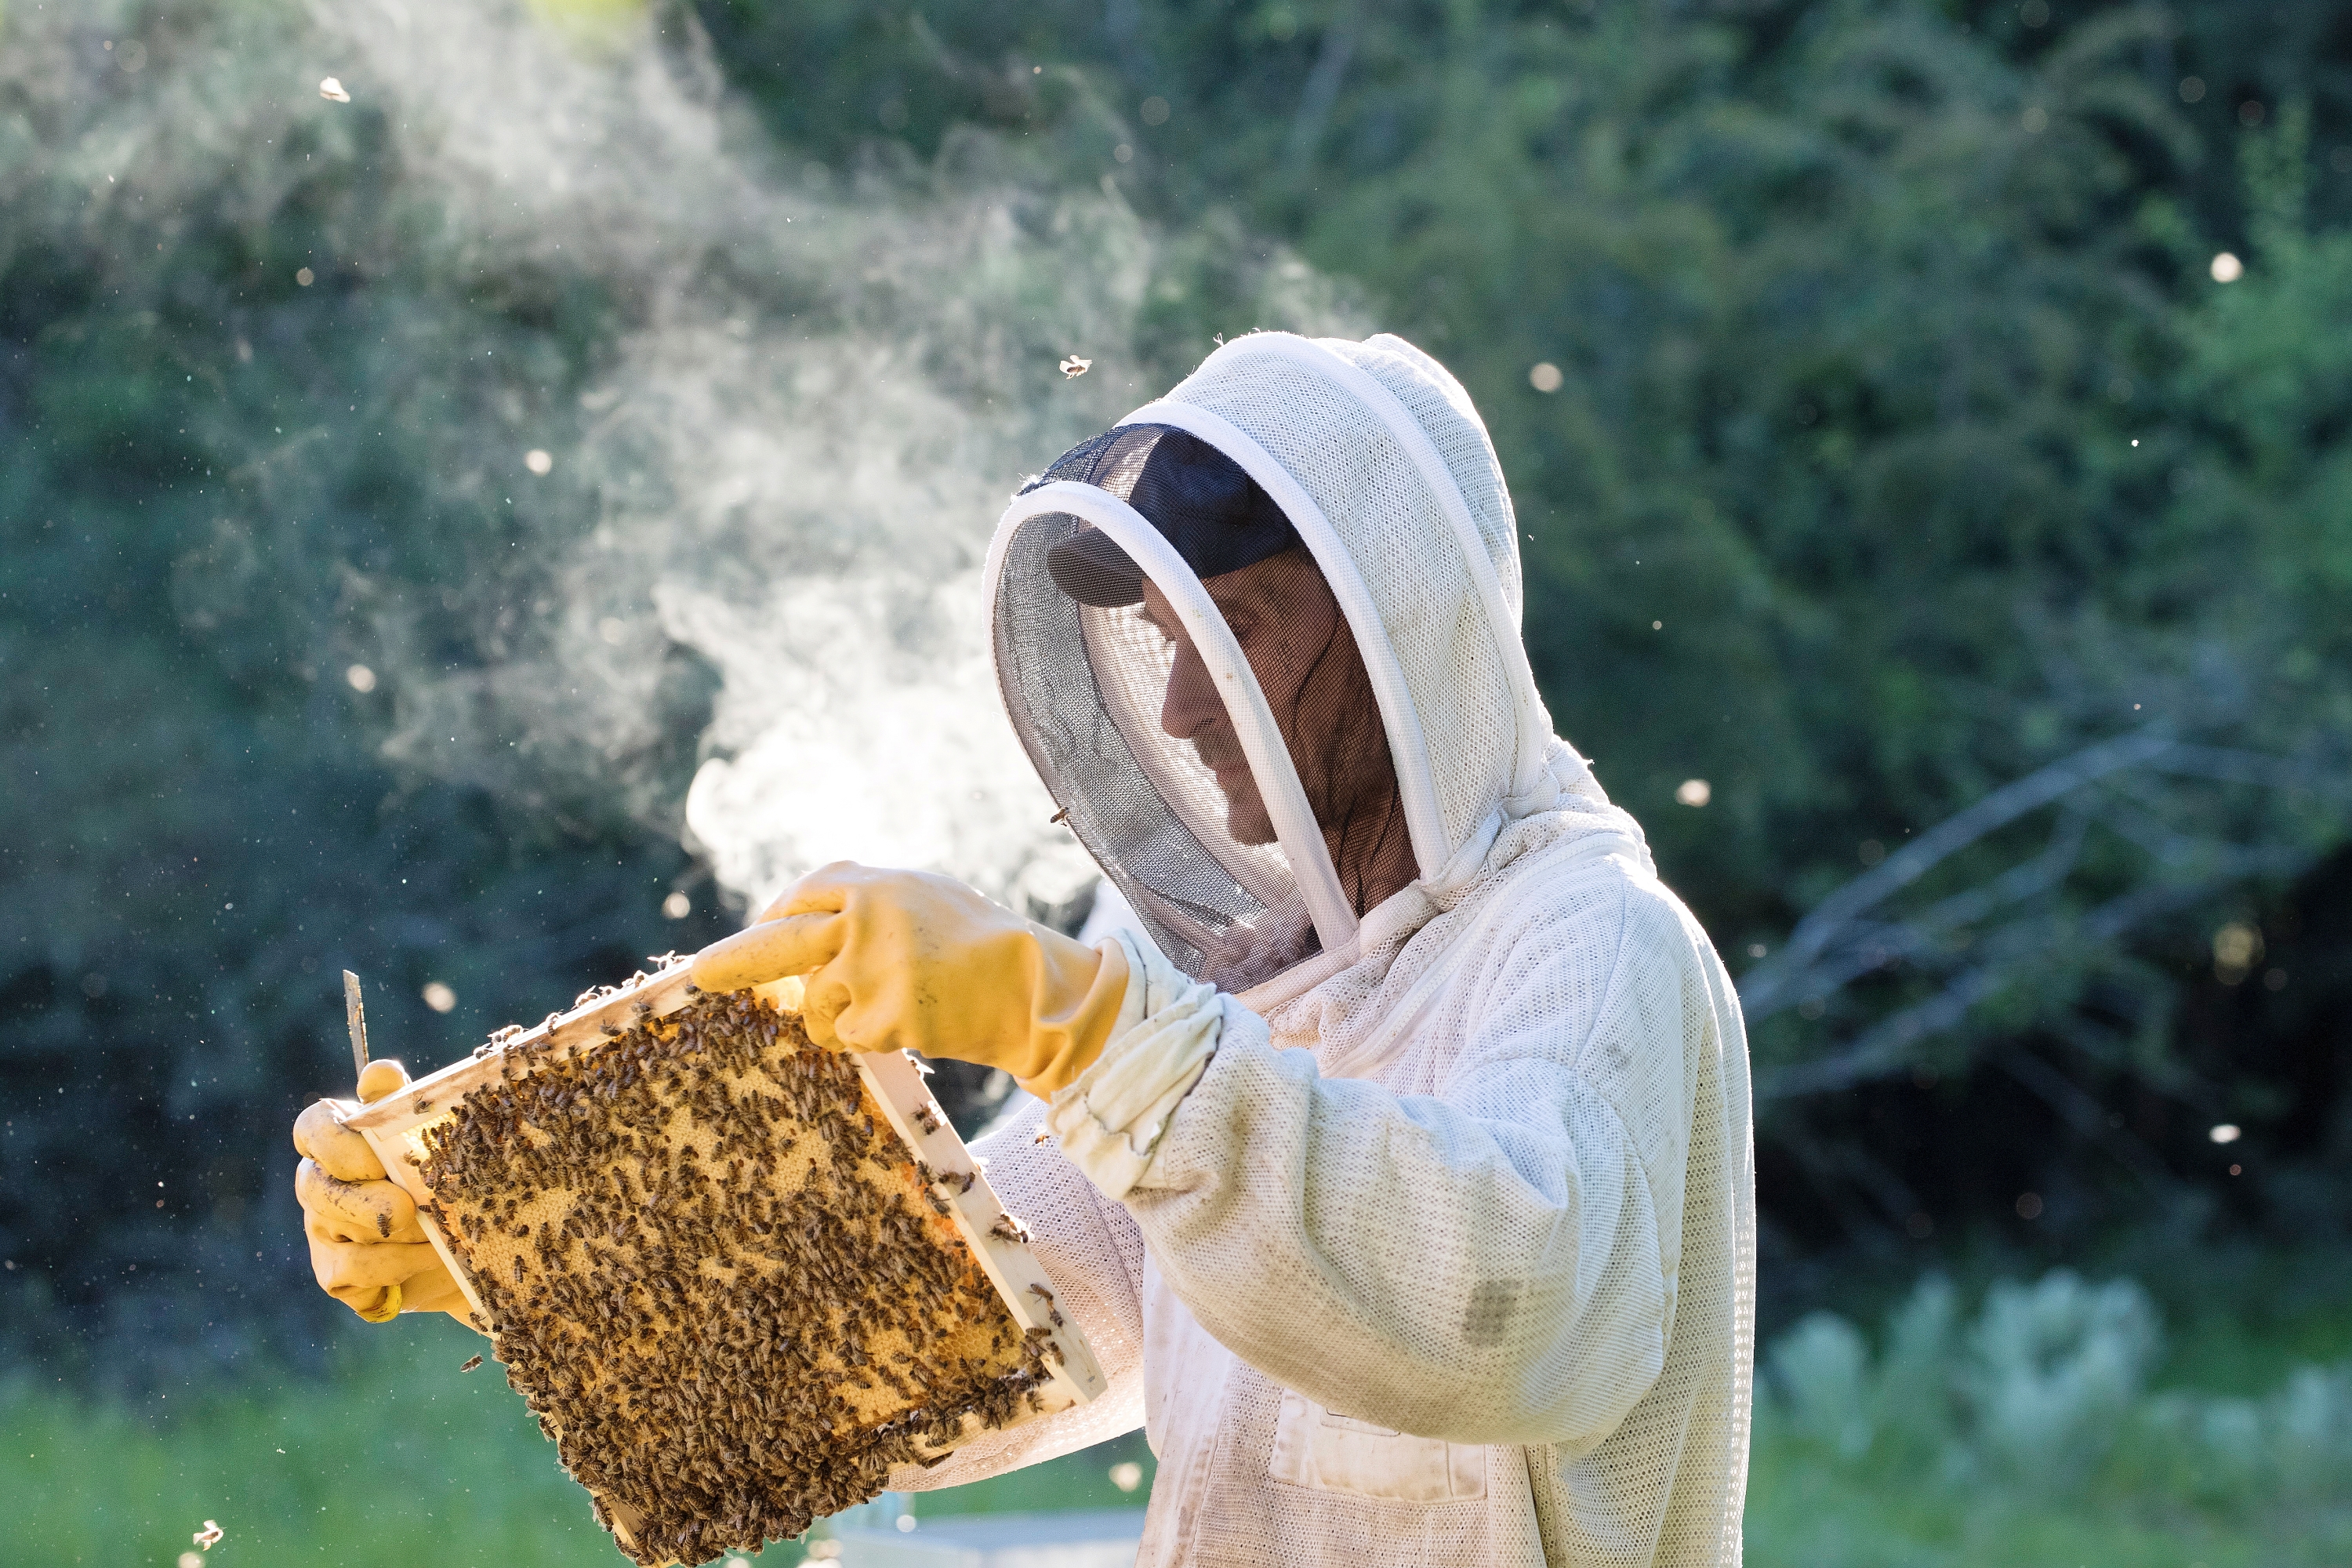 Miel : les années noires se suivent pour les apiculteurs